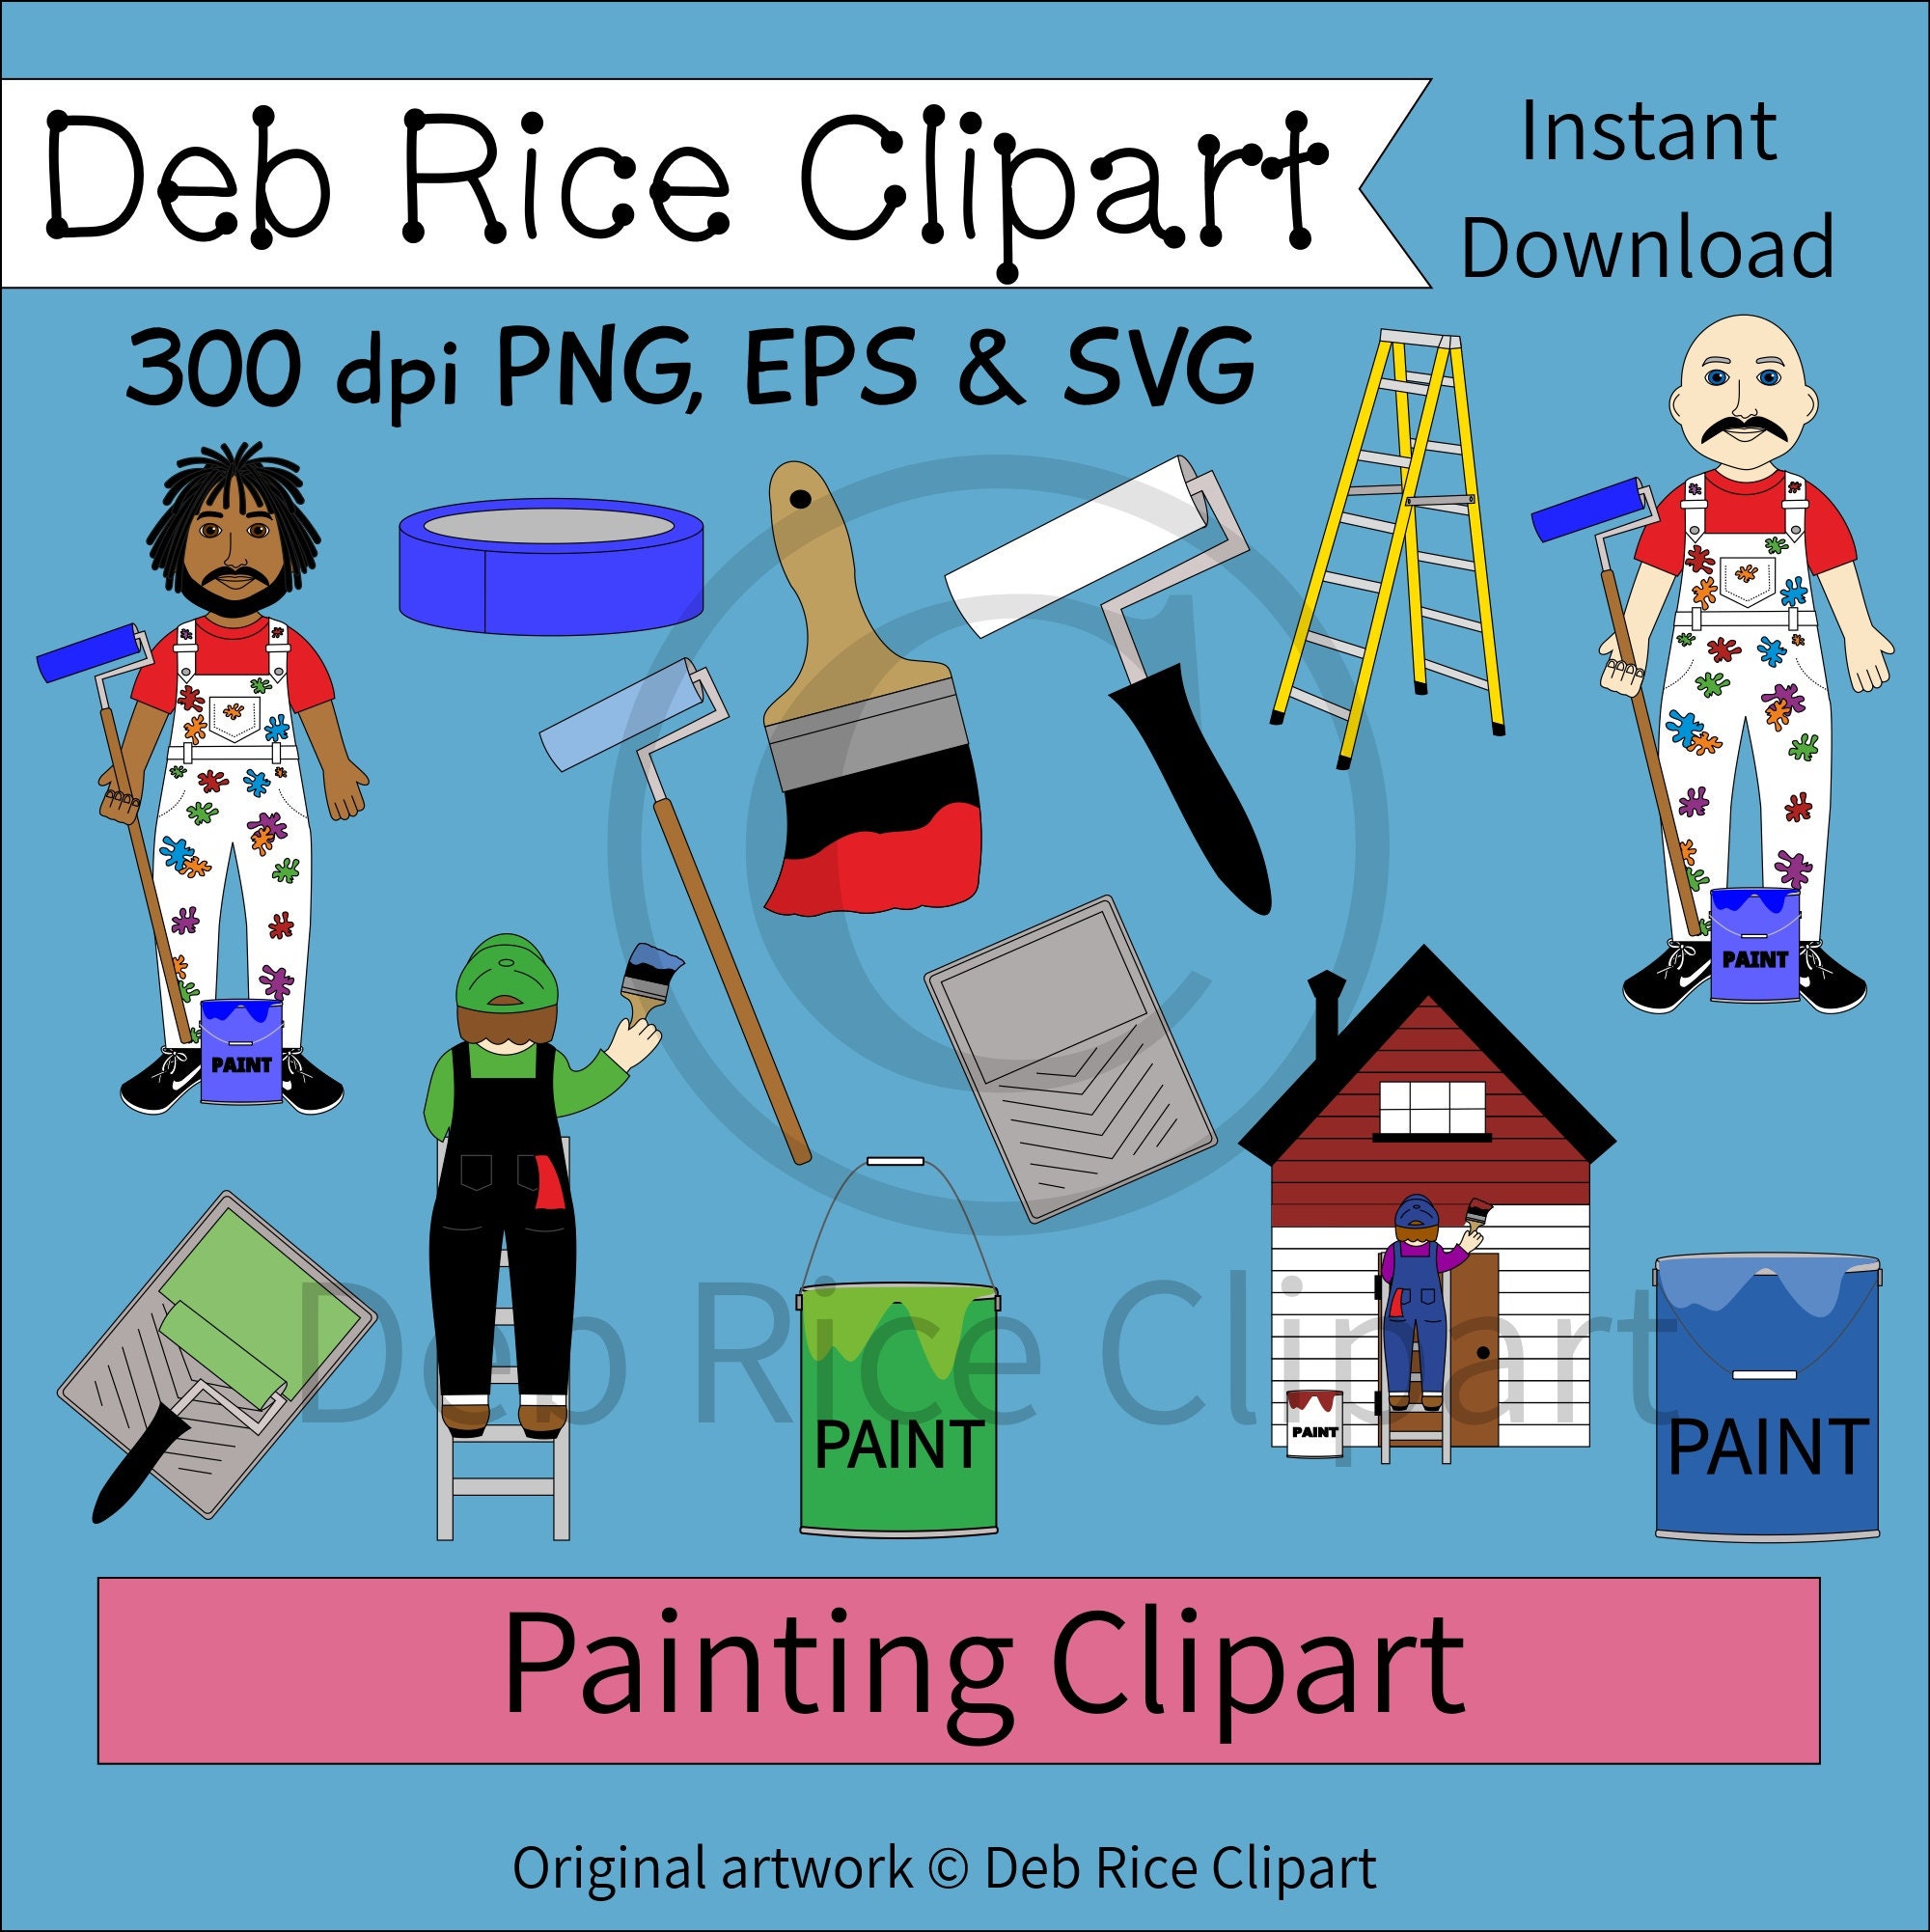 Paint Brush Clipart, Paint Palette Clipart, Art Supply Clip Art, Commercial  Use Ok 